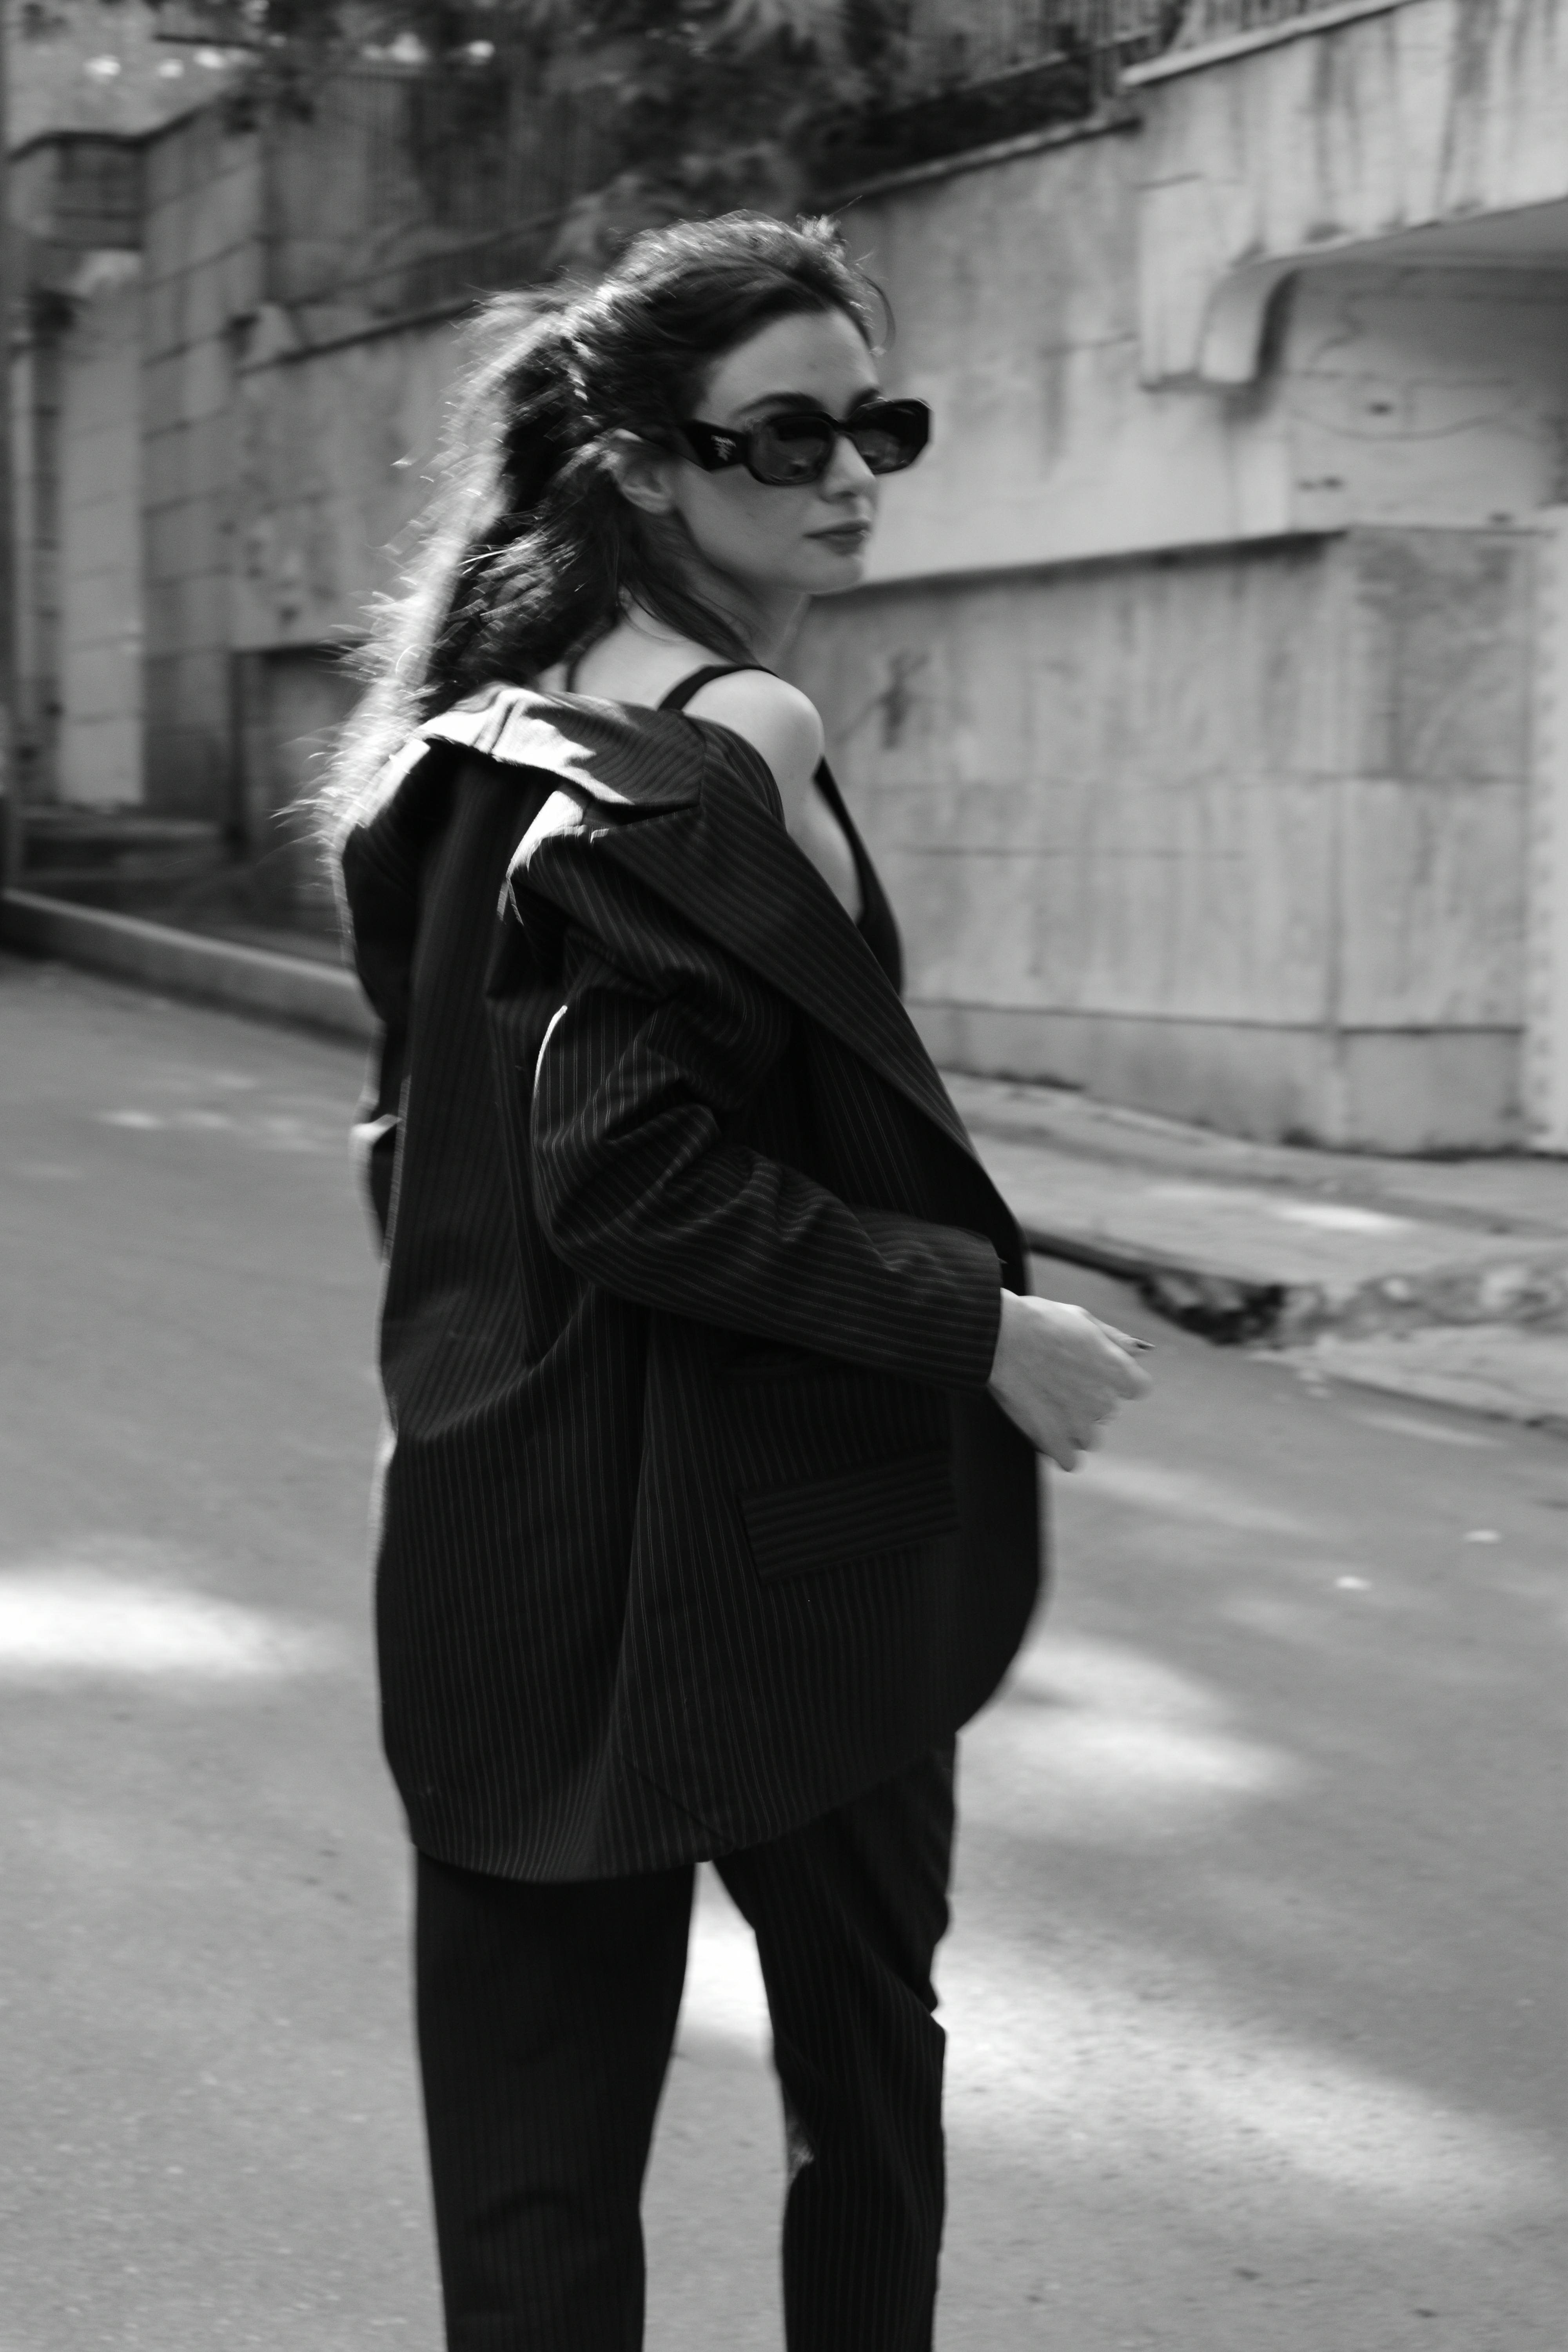 Shirtless Woman Wearing Black Blazer · Free Stock Photo